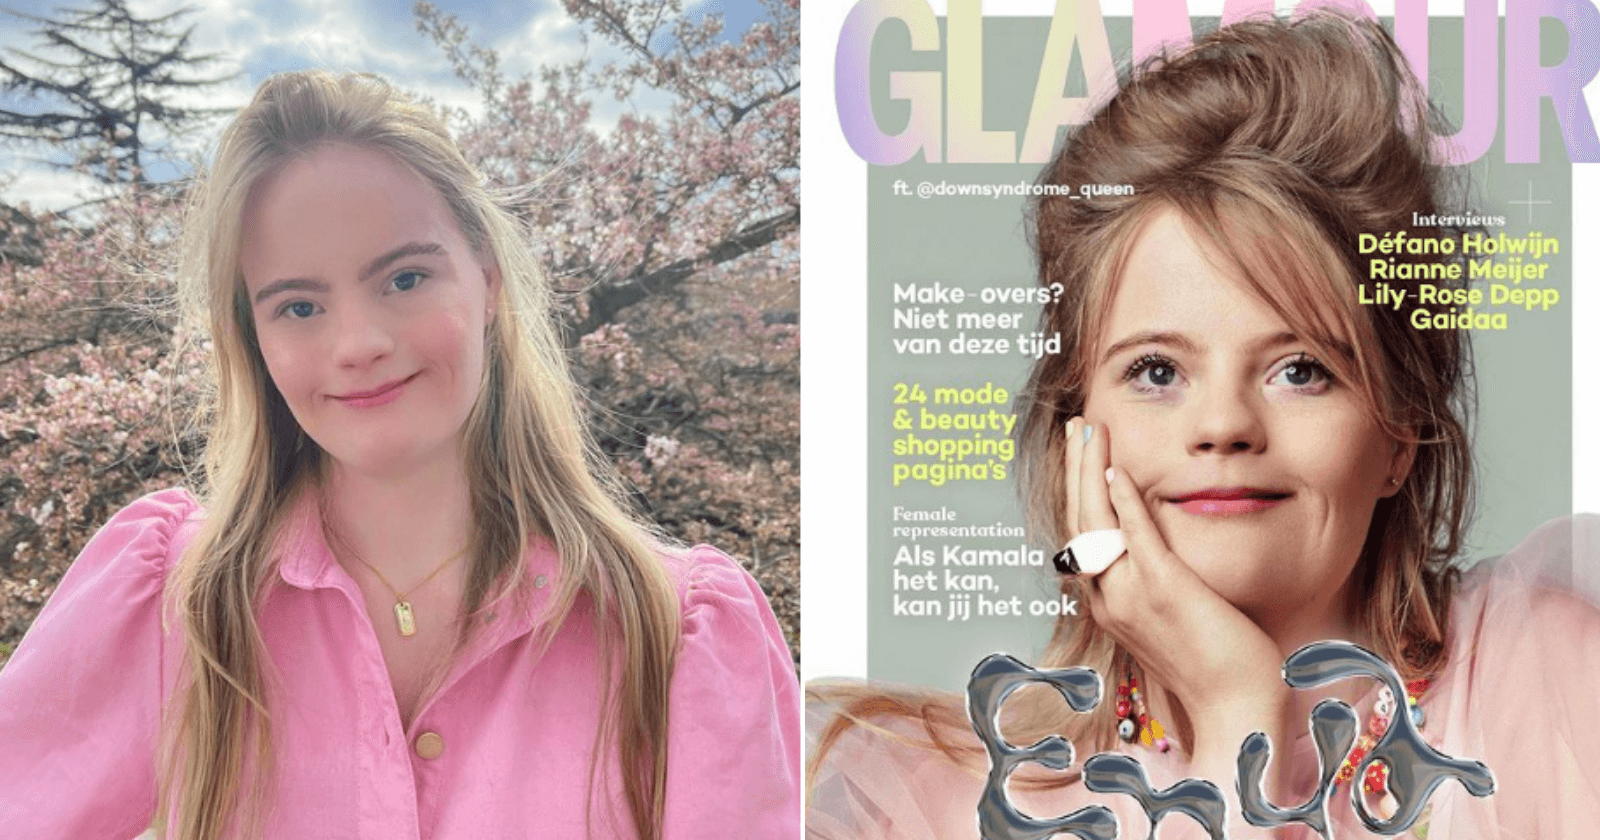 Garota com Down vira capa de revista holandesa e comemora inclusão